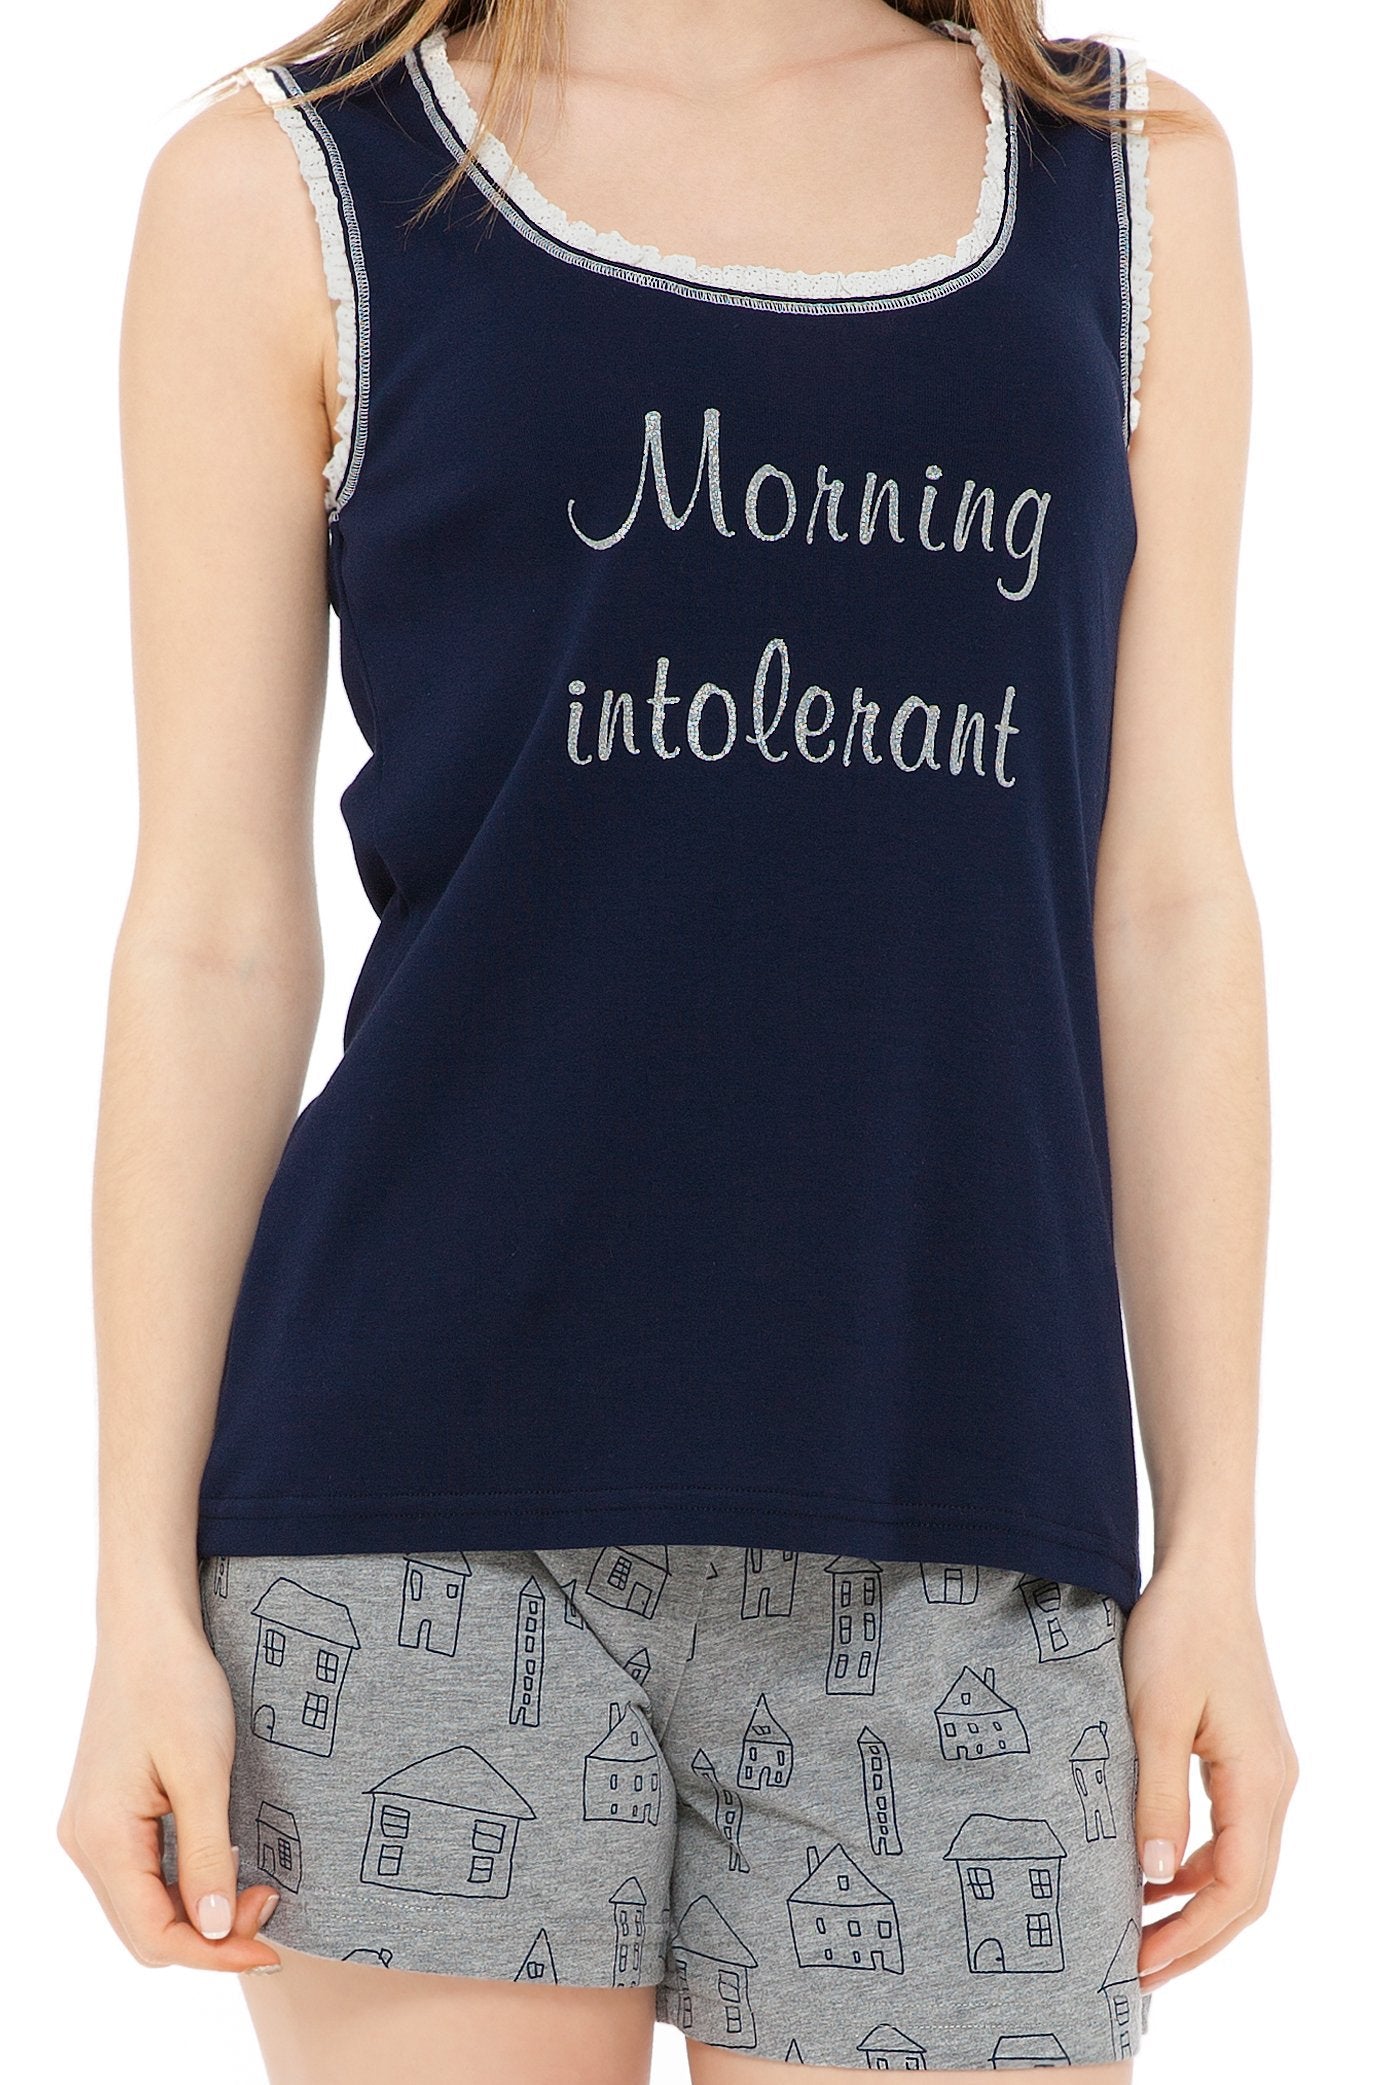 chassca singlet & short morning intolerant pyjama set - Breakmood